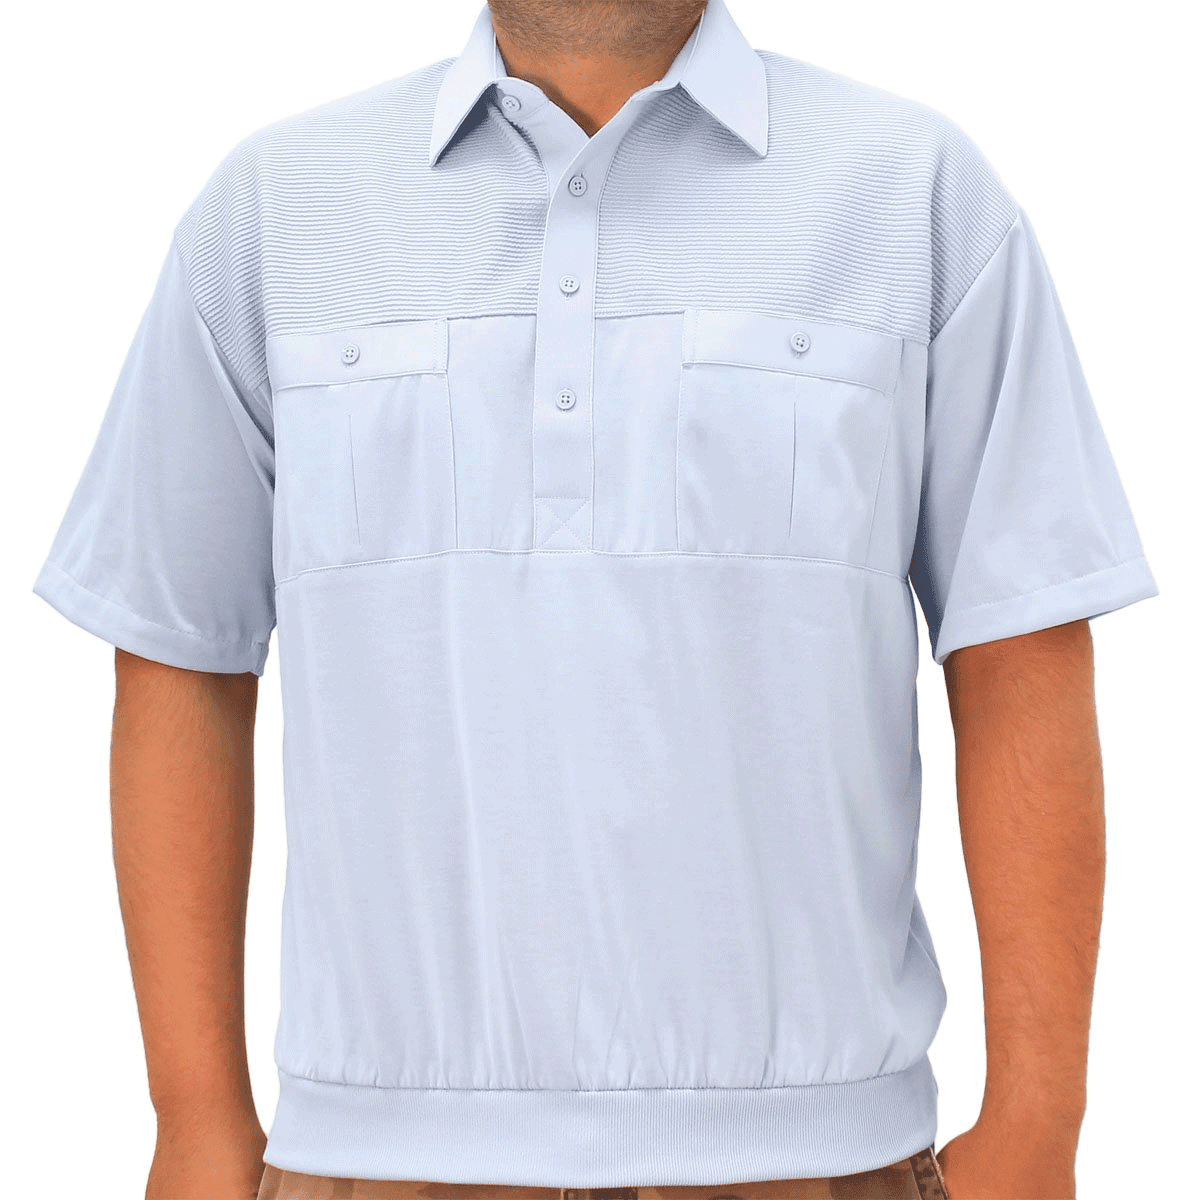 Palmland Classic 2 Pocket Solid Banded Bottom Polo Shirt Sizes Medium ...